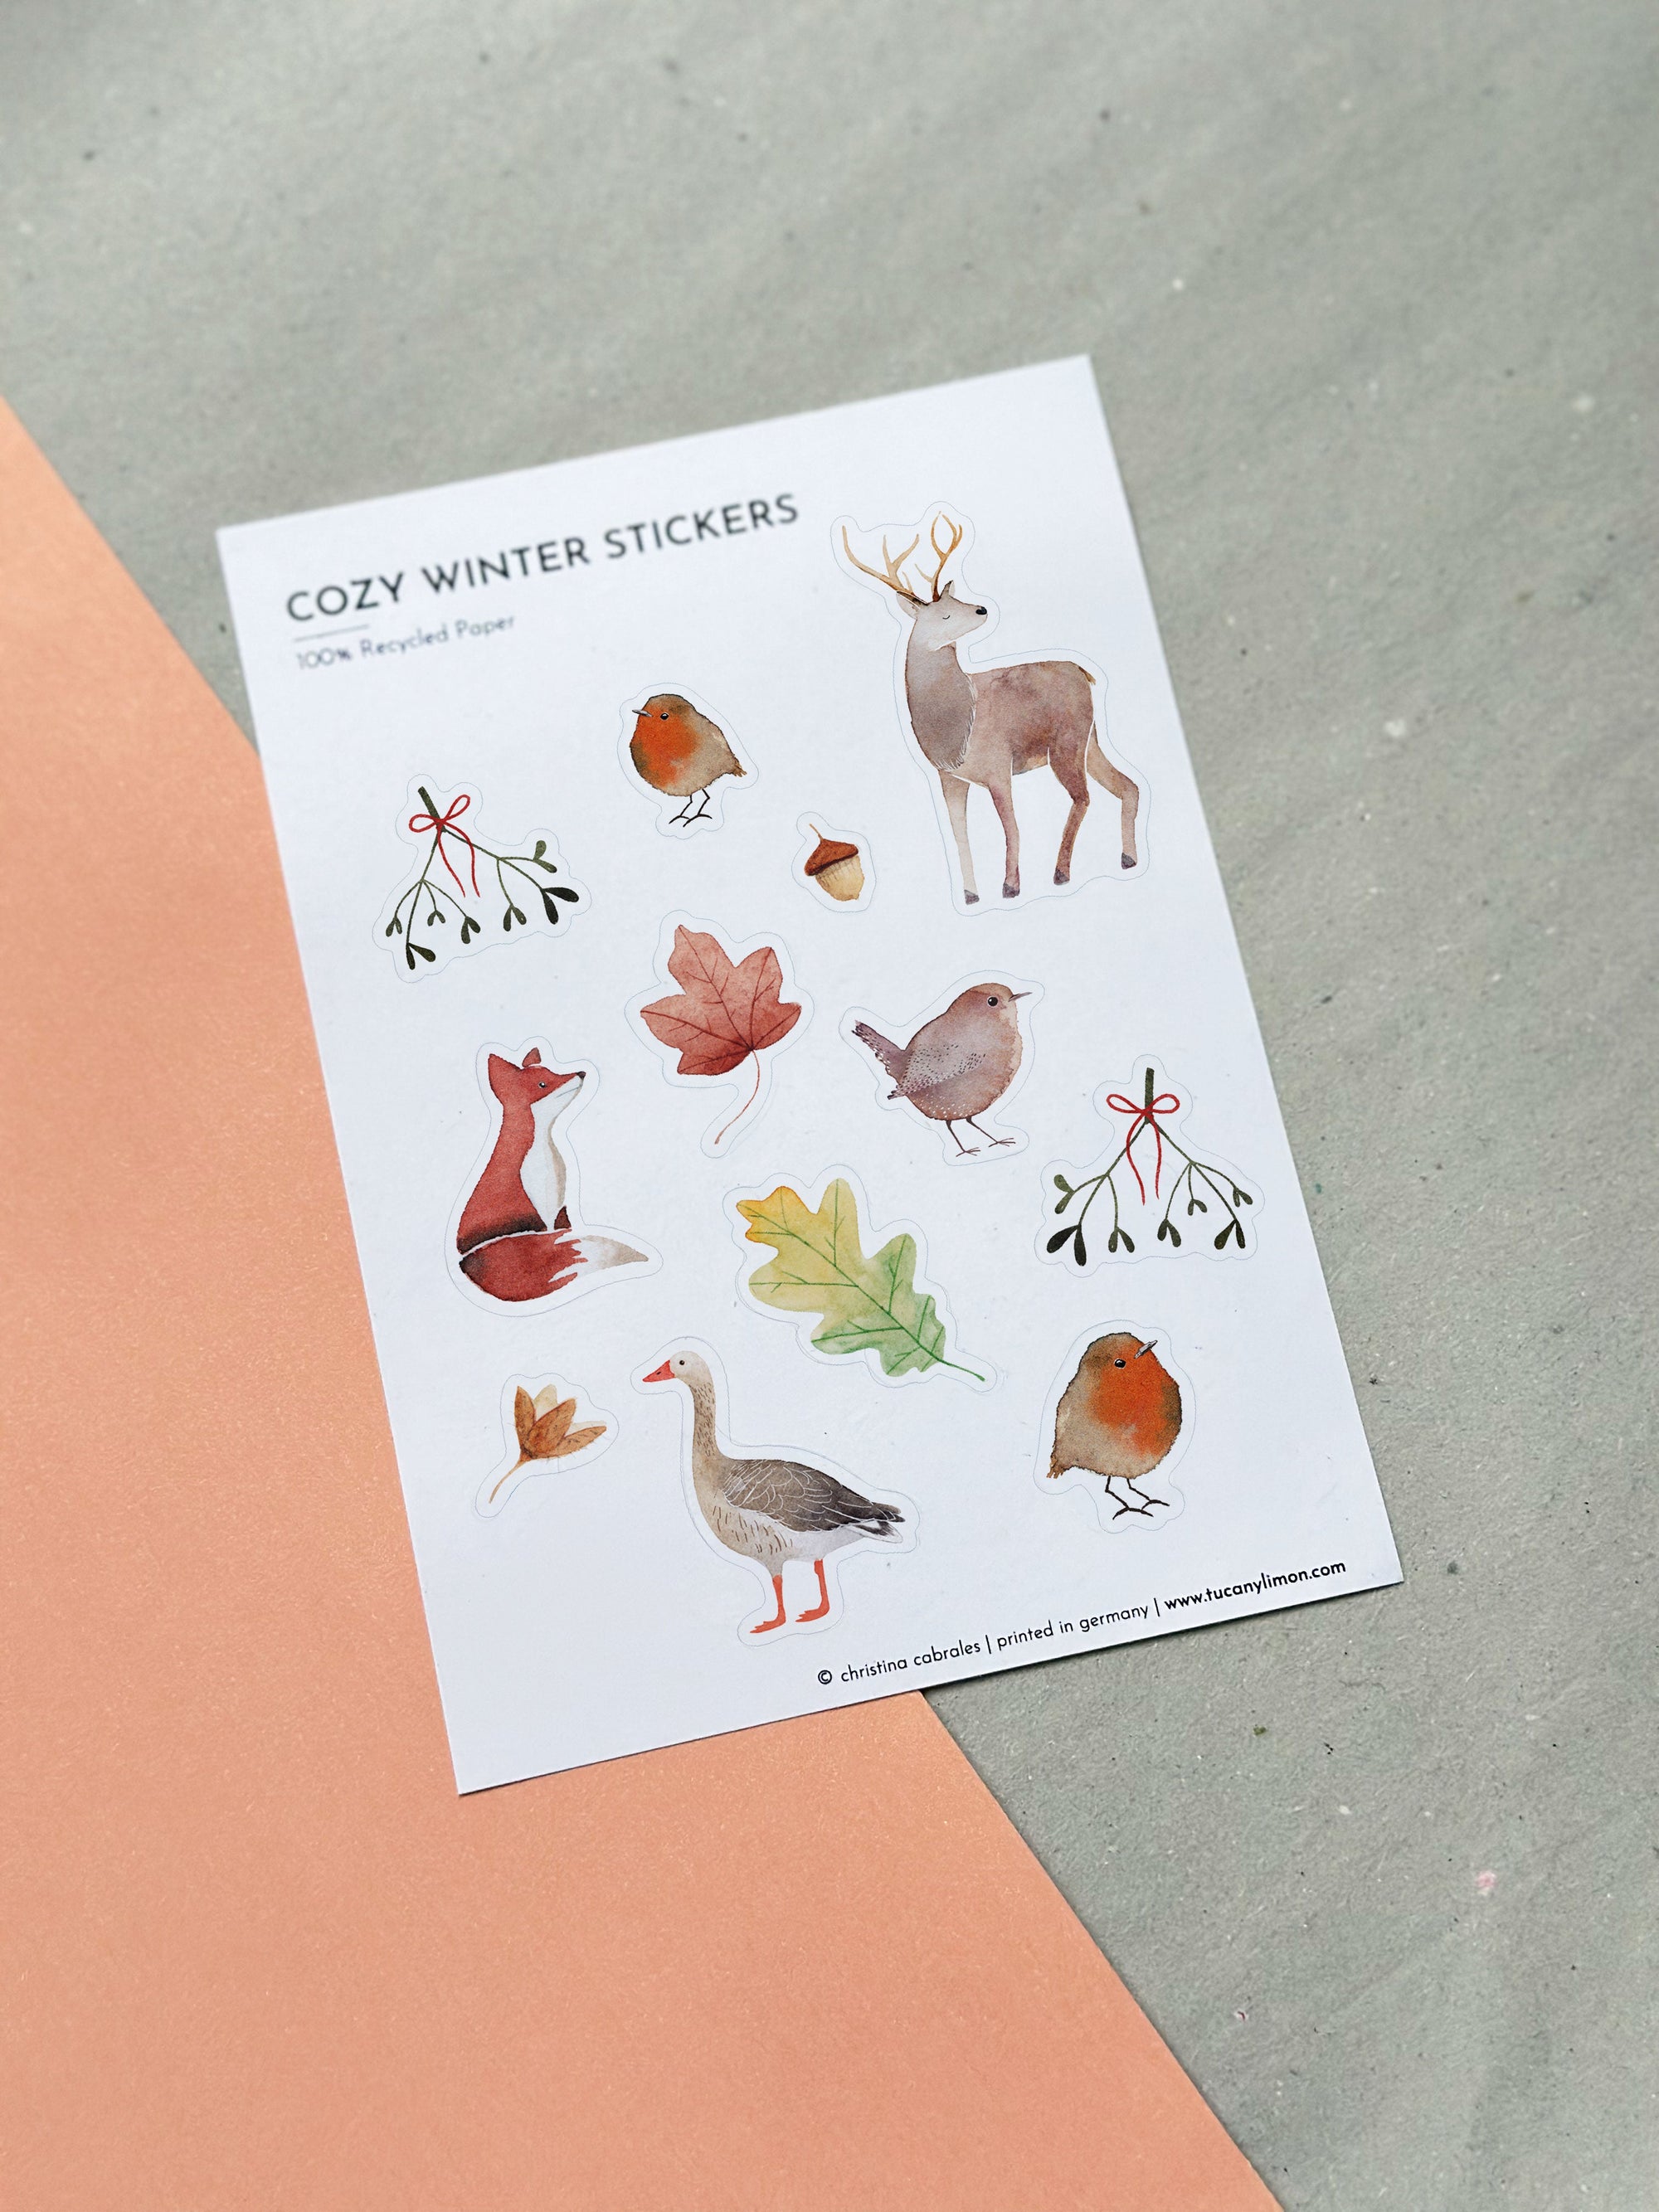 Cozy Winter Sticker 3er Set aus Recyclingpapier / ohne PVC